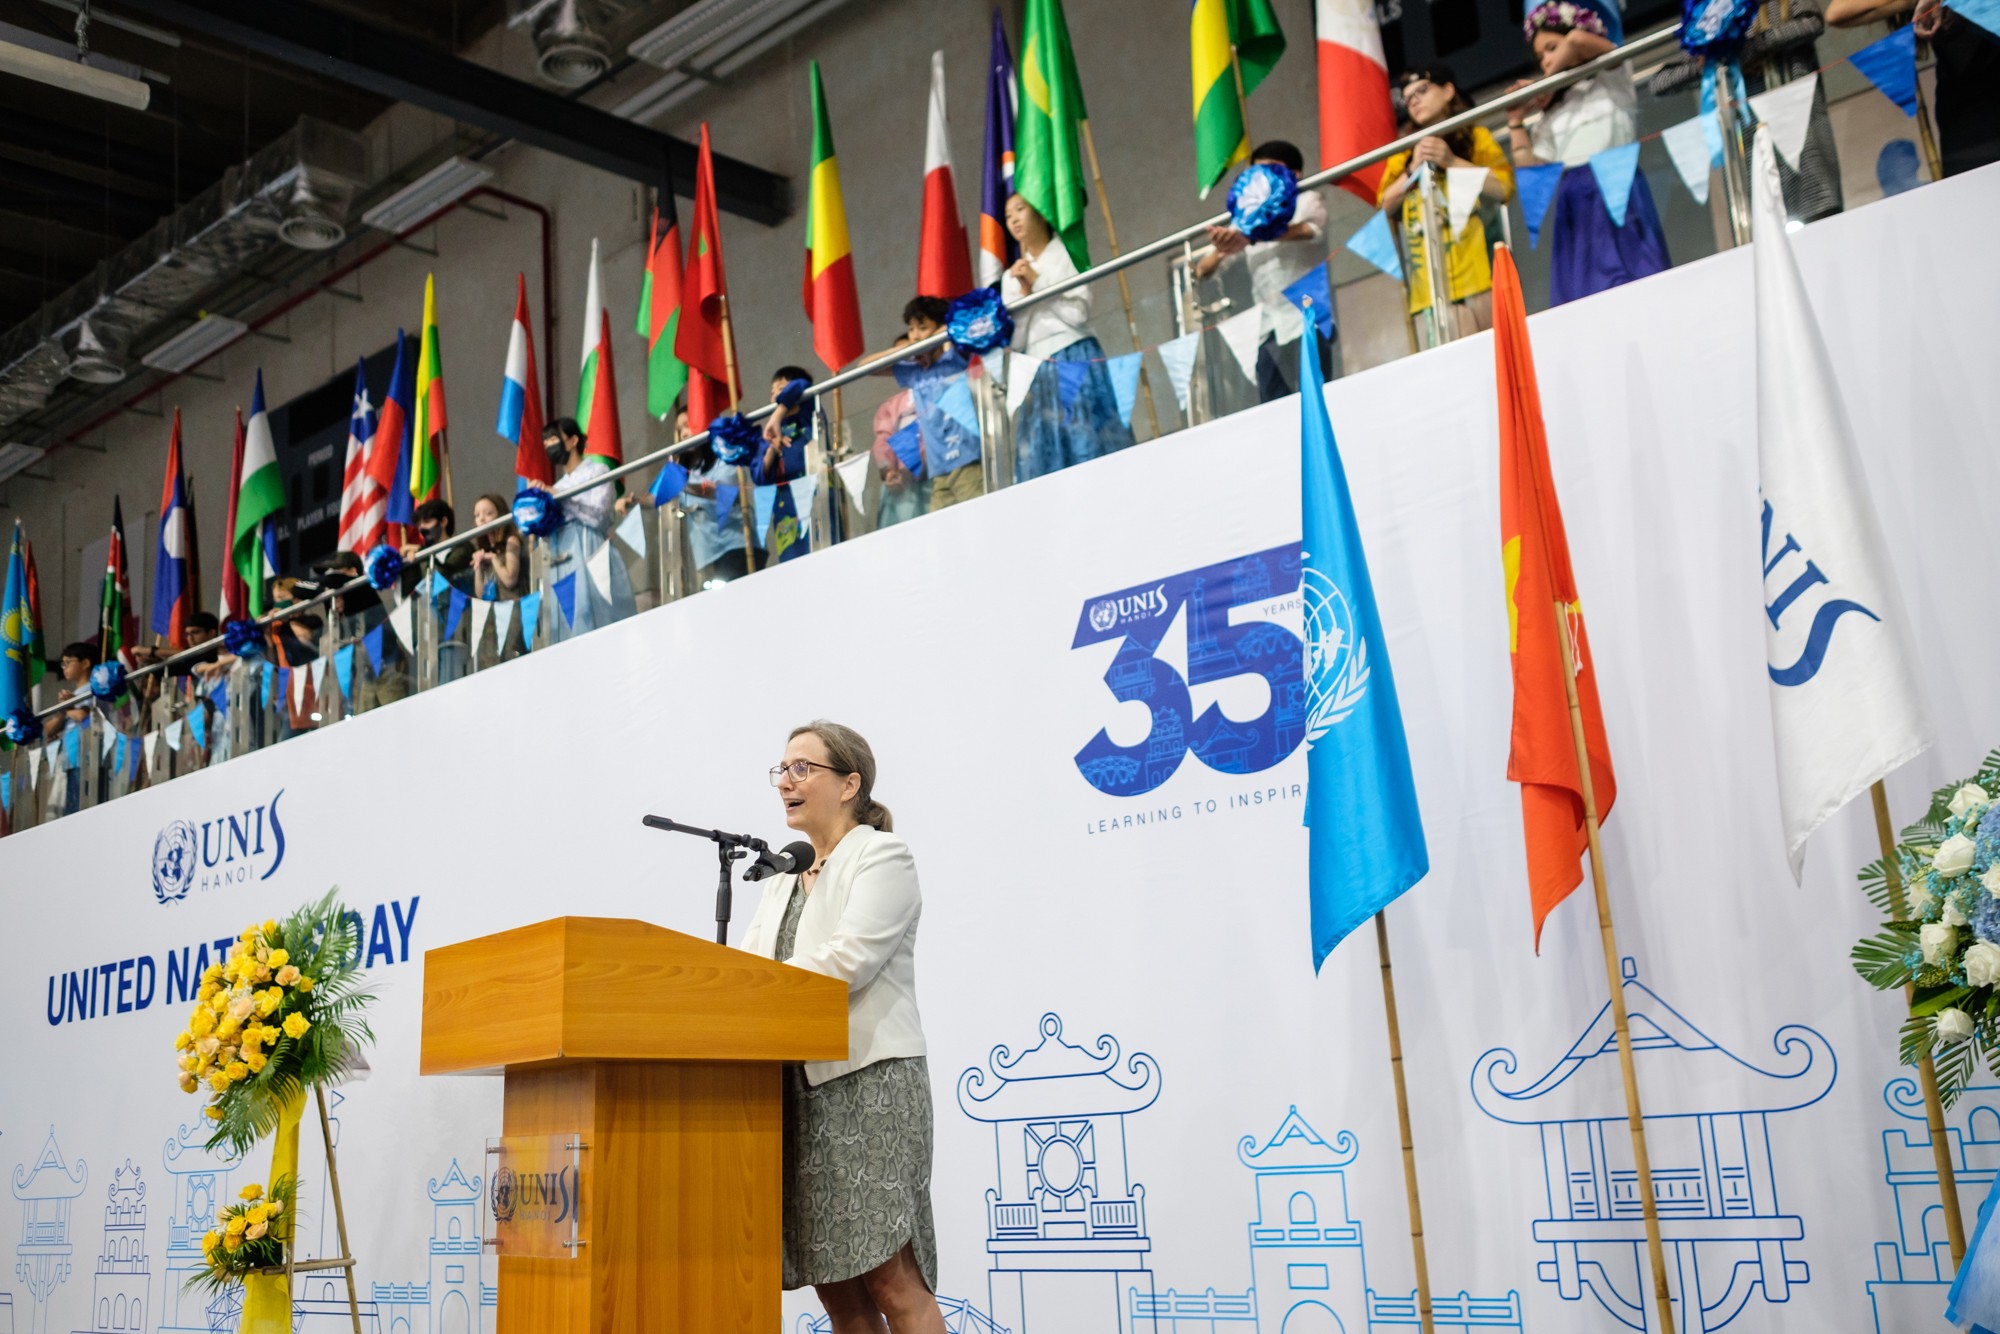 Ngày hội Liên Hợp Quốc tại trường UNIS Hà Nội: Ấn tượng với màn diễu cờ đầy hoành tráng - Ảnh 4.